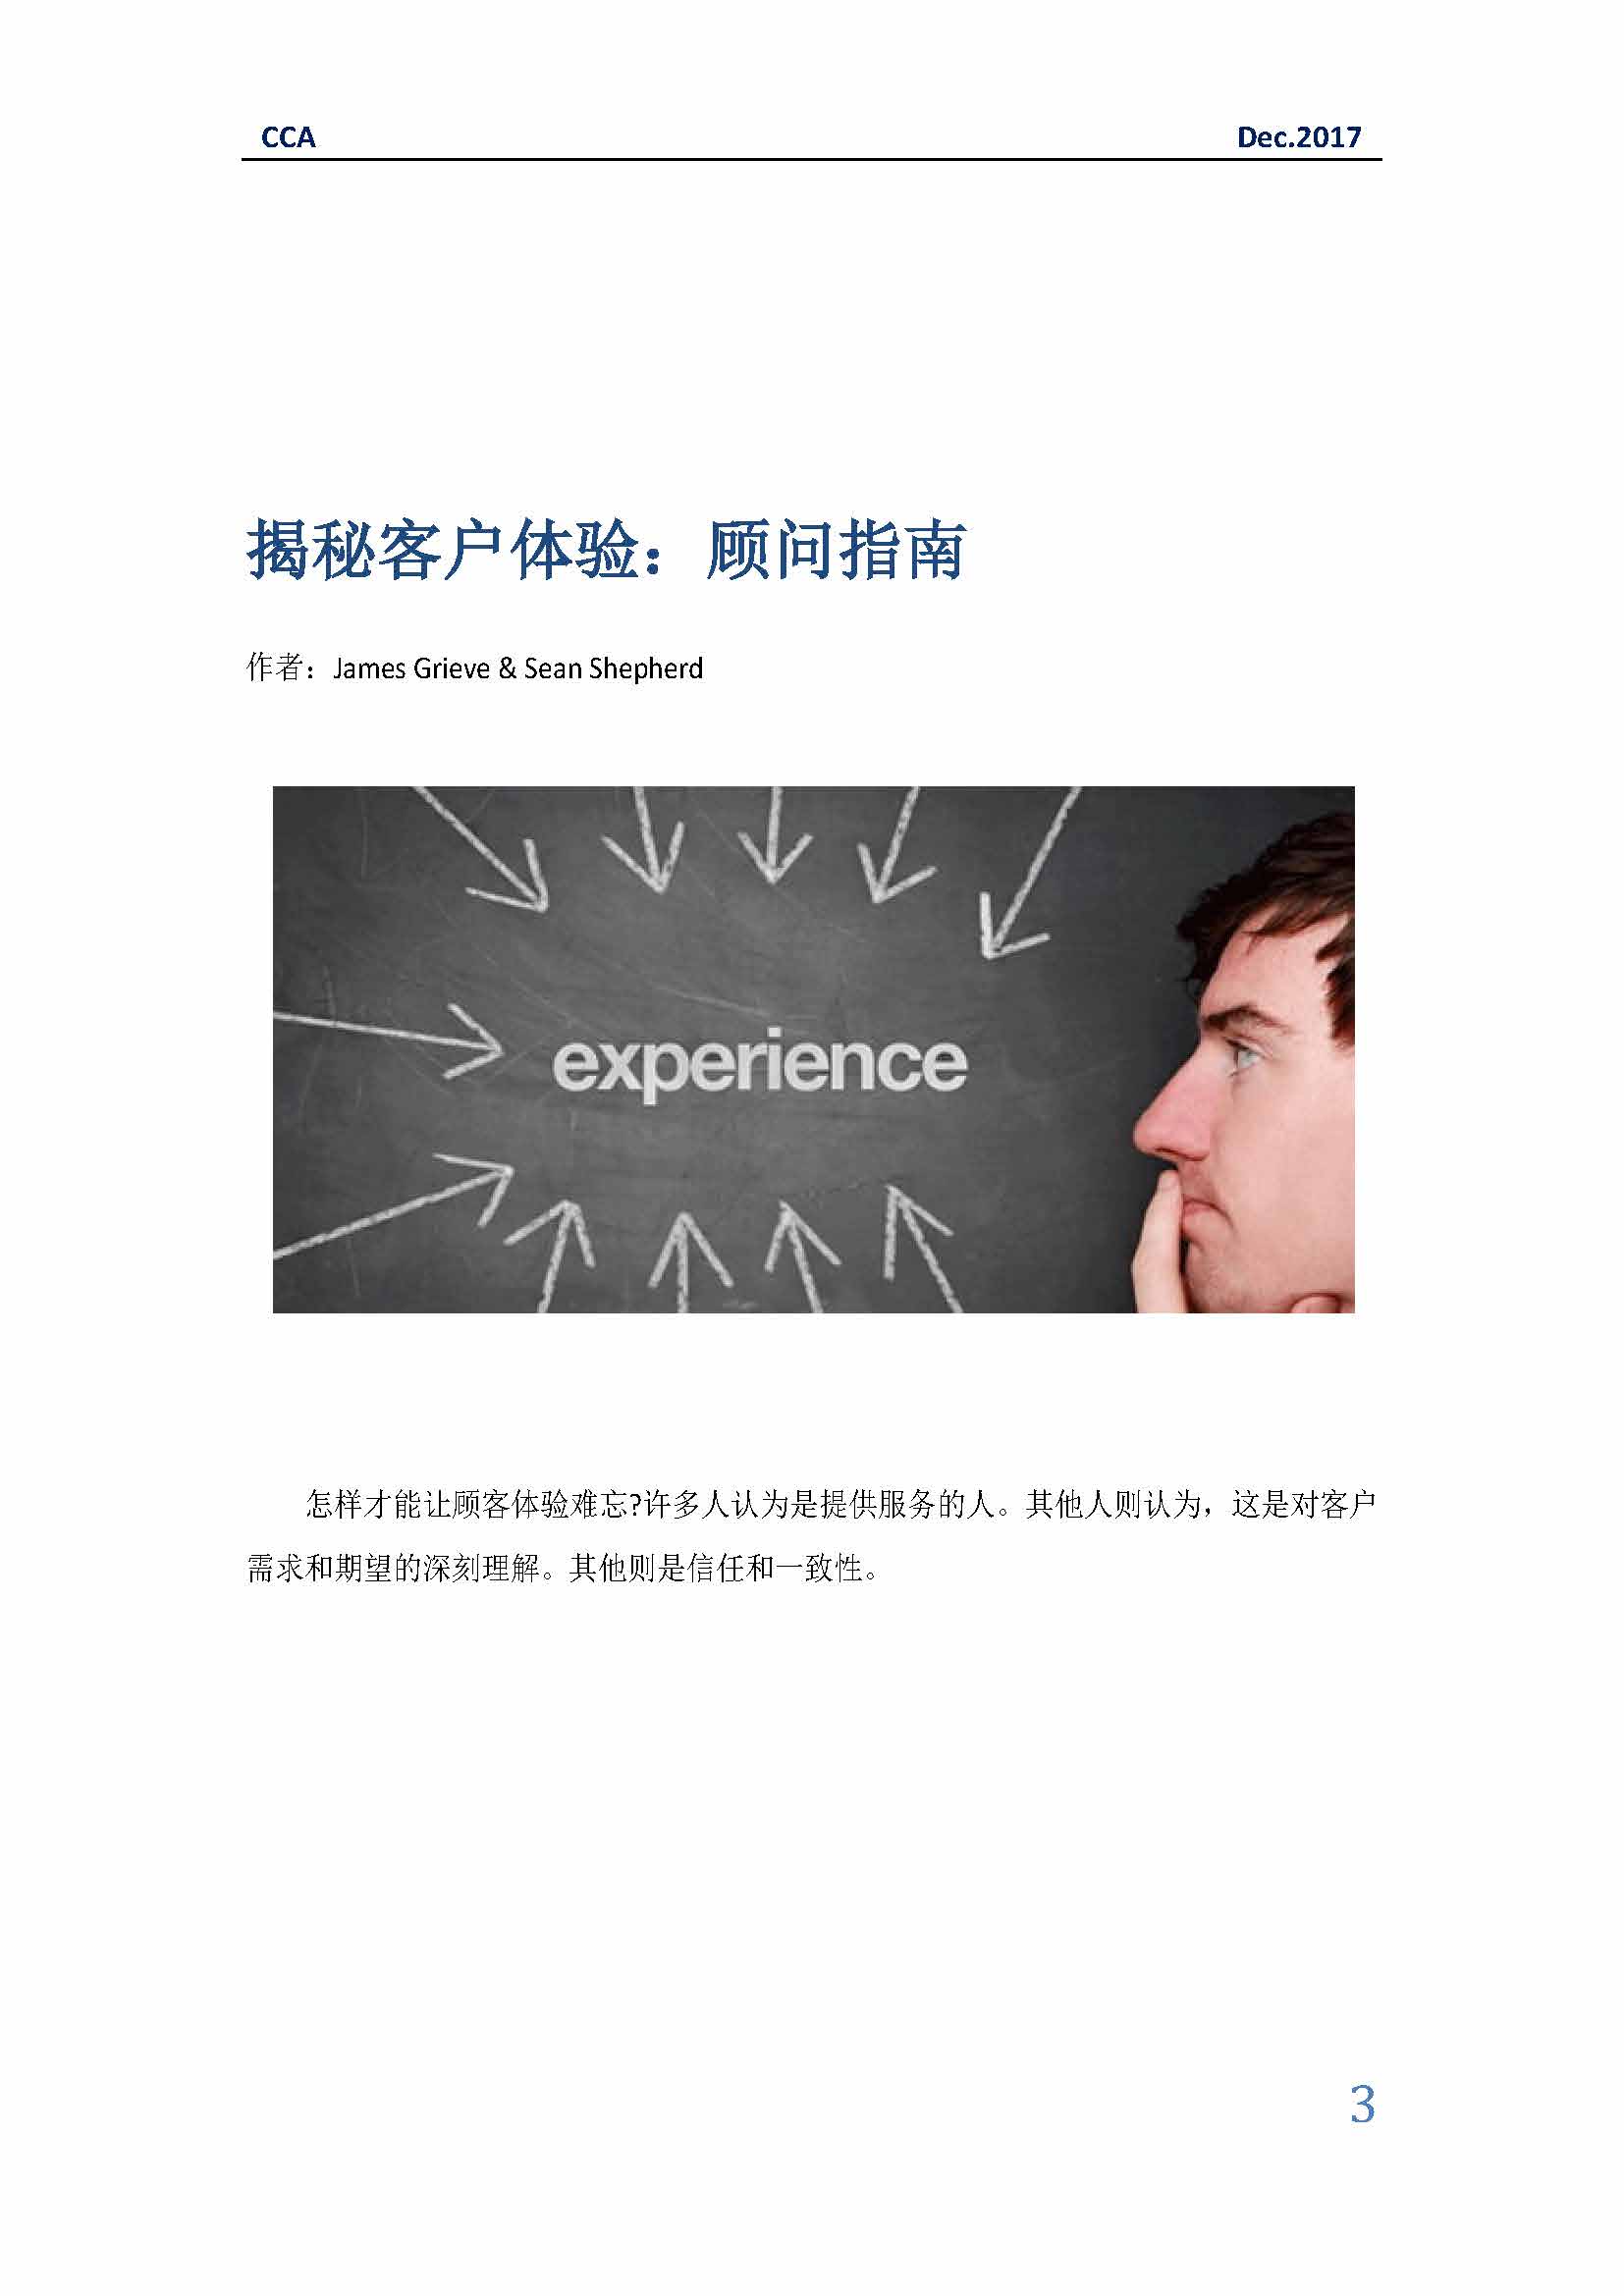 中国科技咨询协会国际快讯（第三十一期）_页面_03.jpg